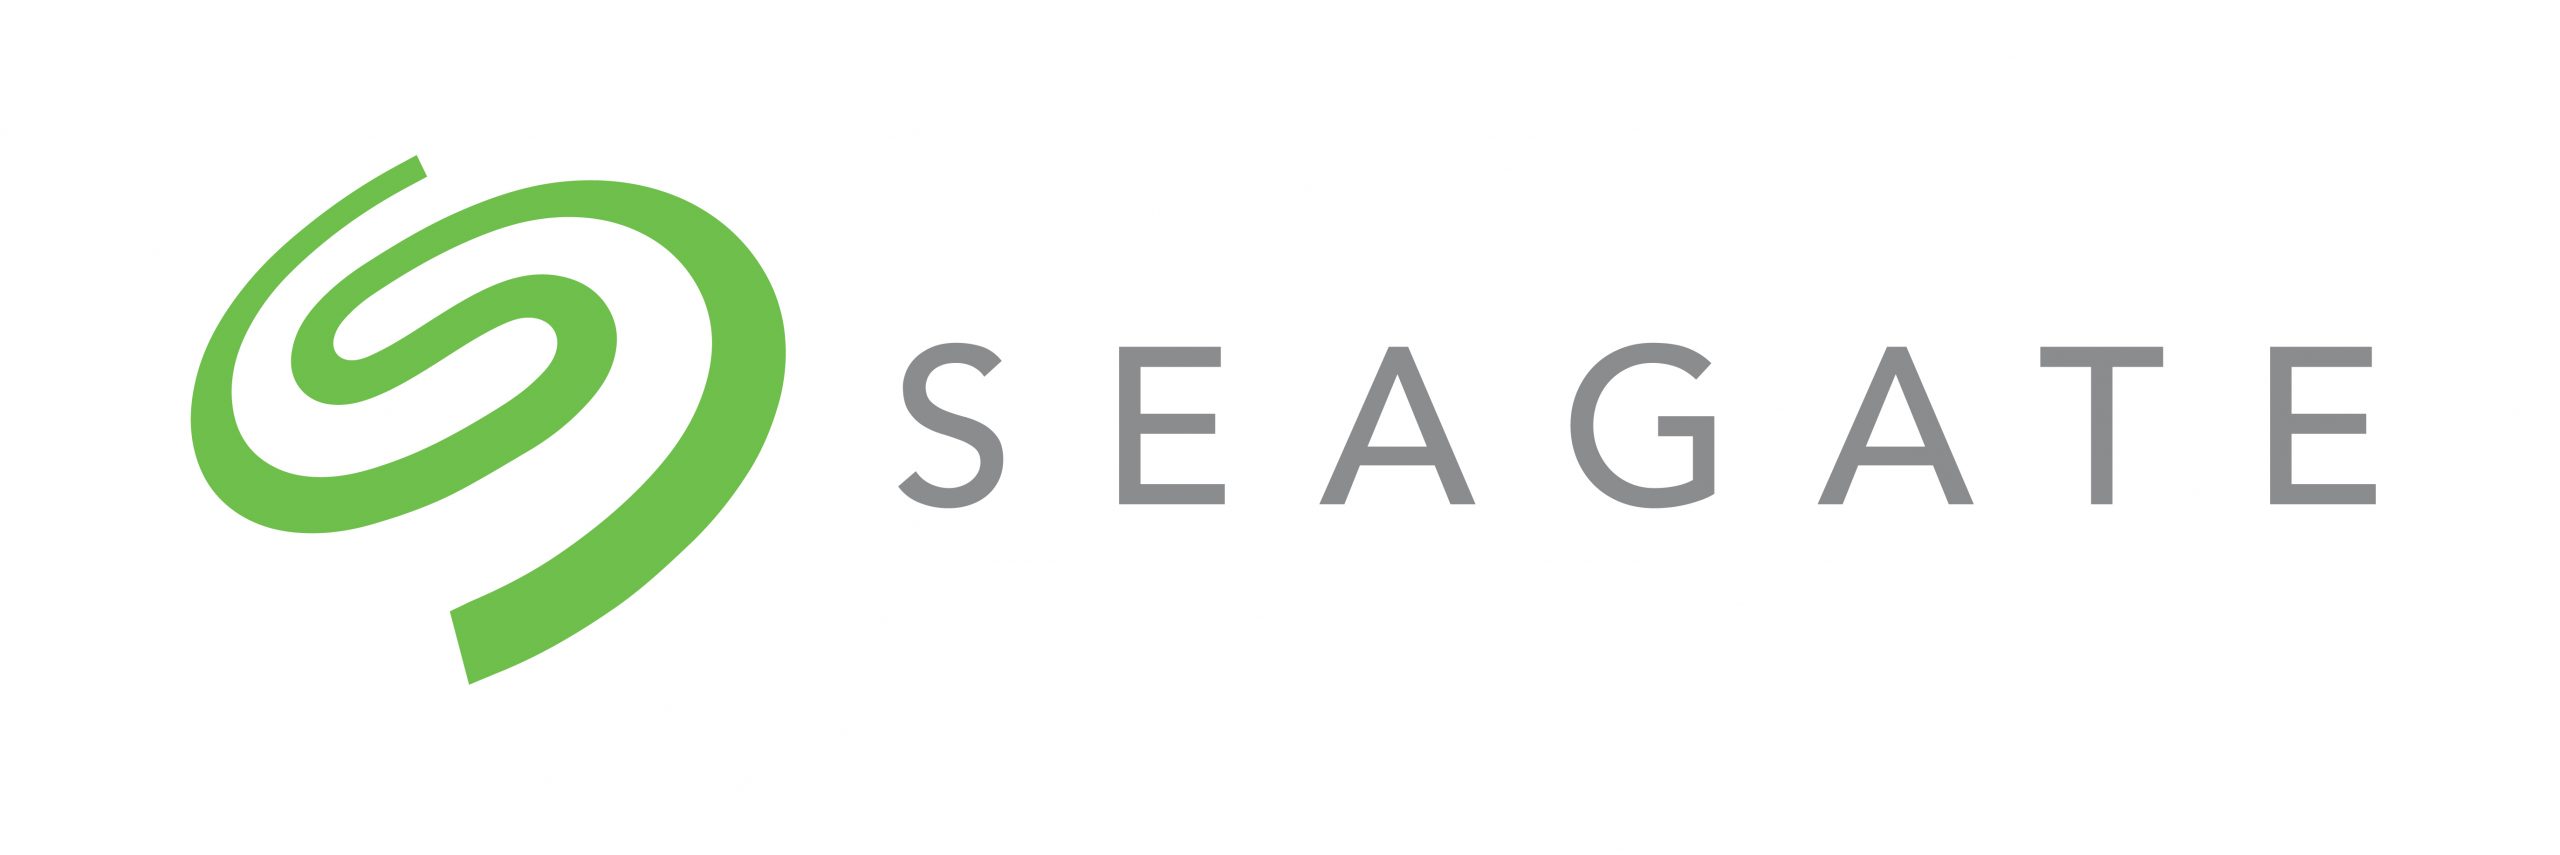 seagate-green-horizontal